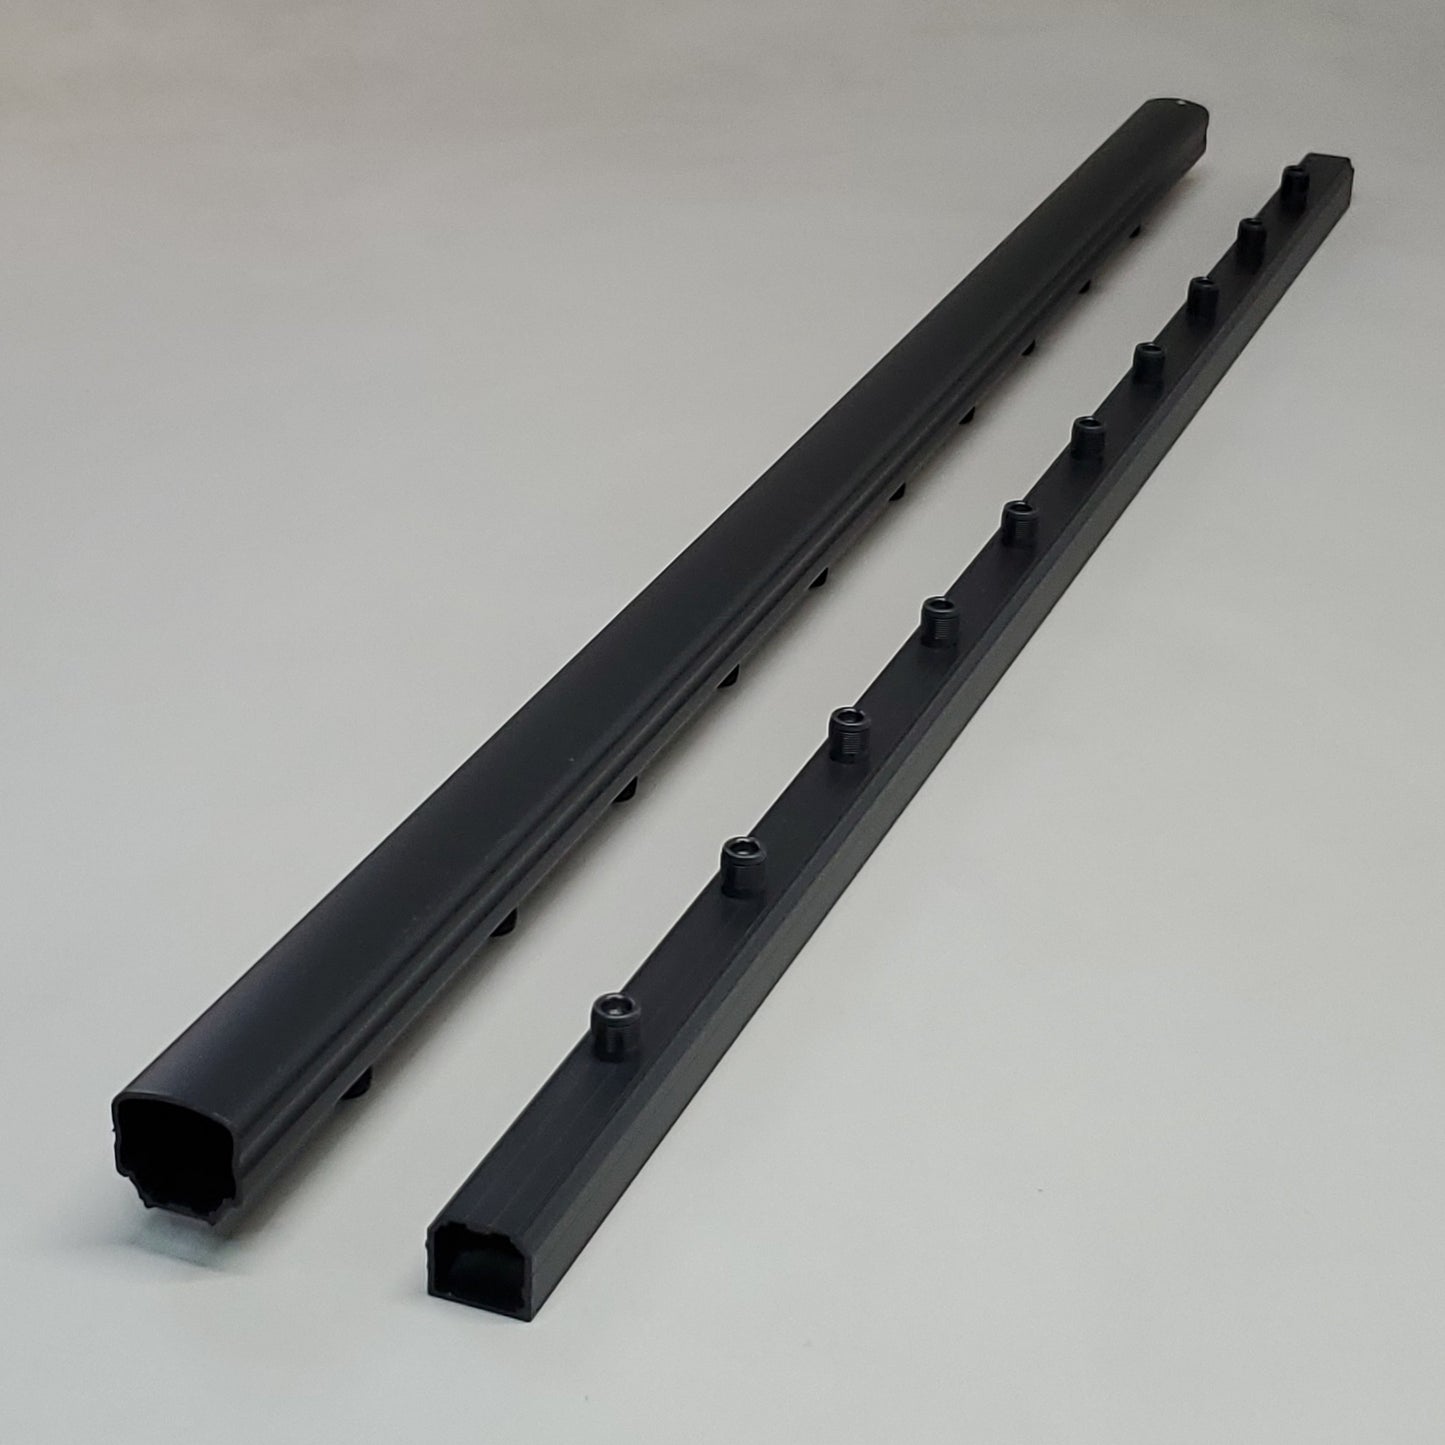 ULTRA MAX Aluminum Railing System MAX Adams Pack of 4 2-Rail 42"X48" Satin Black (New)